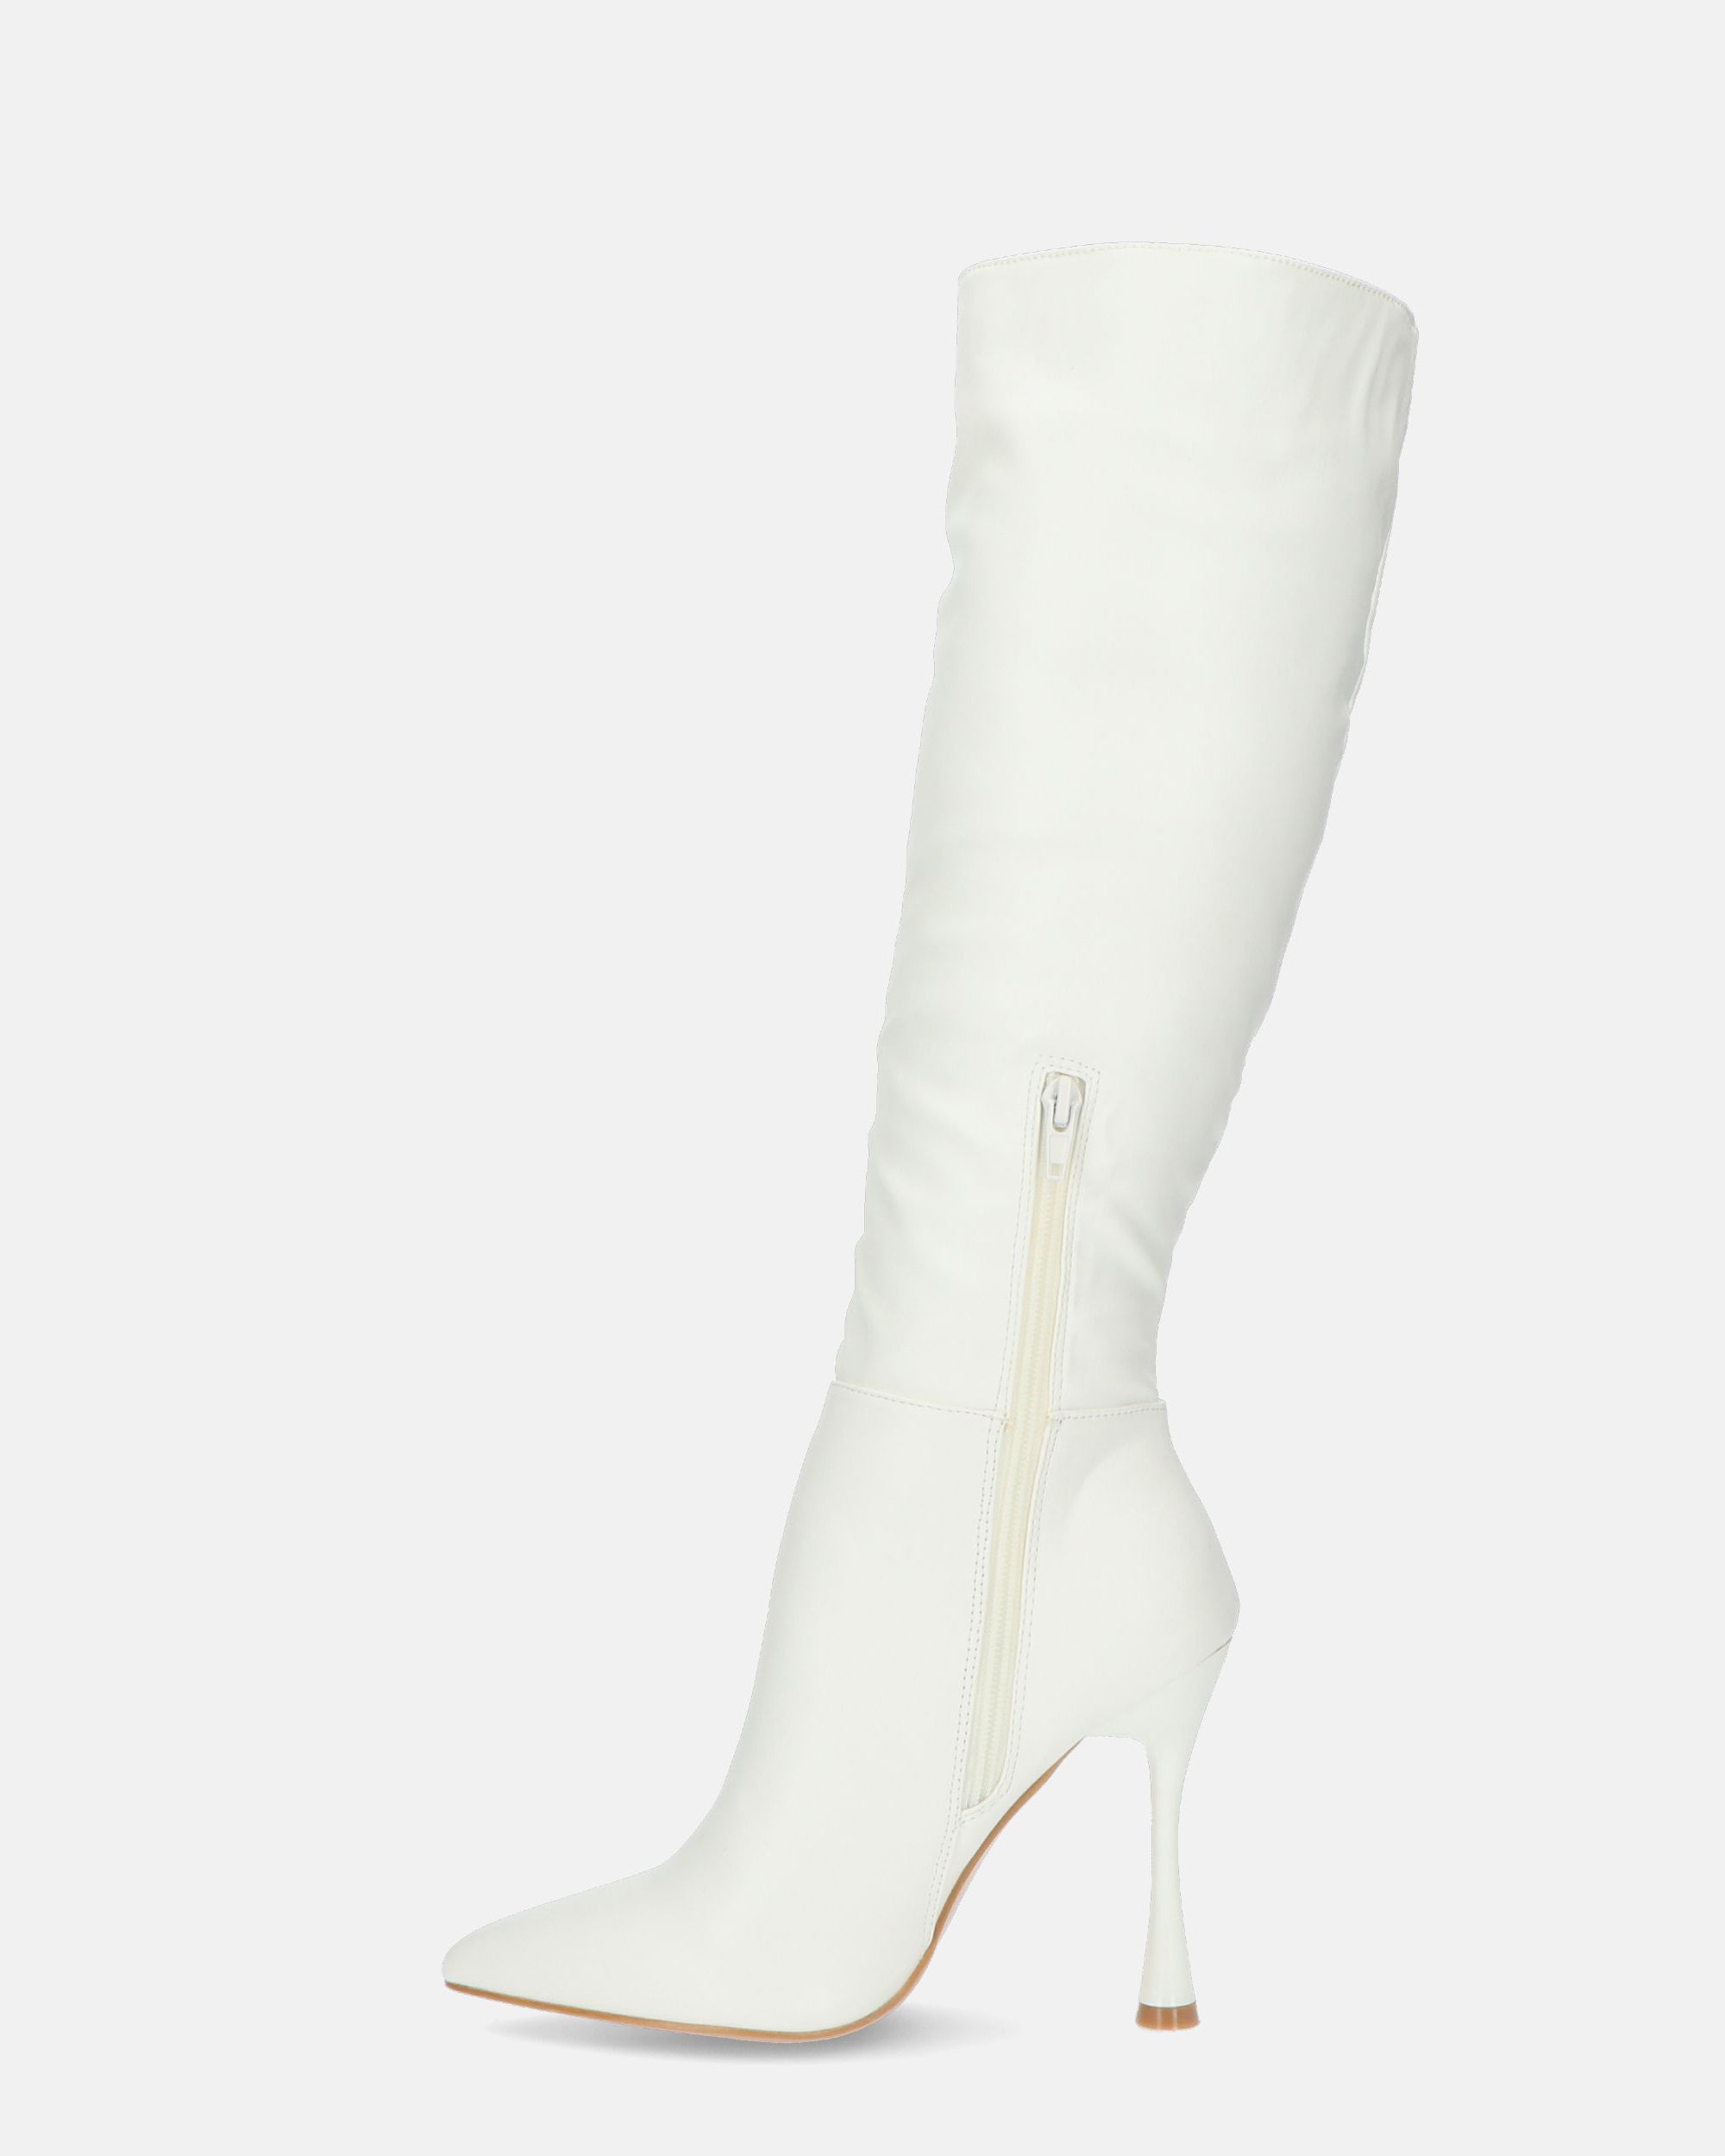 KAYLA - botas blancas de tacón alto en PU negro y cremallera lateral